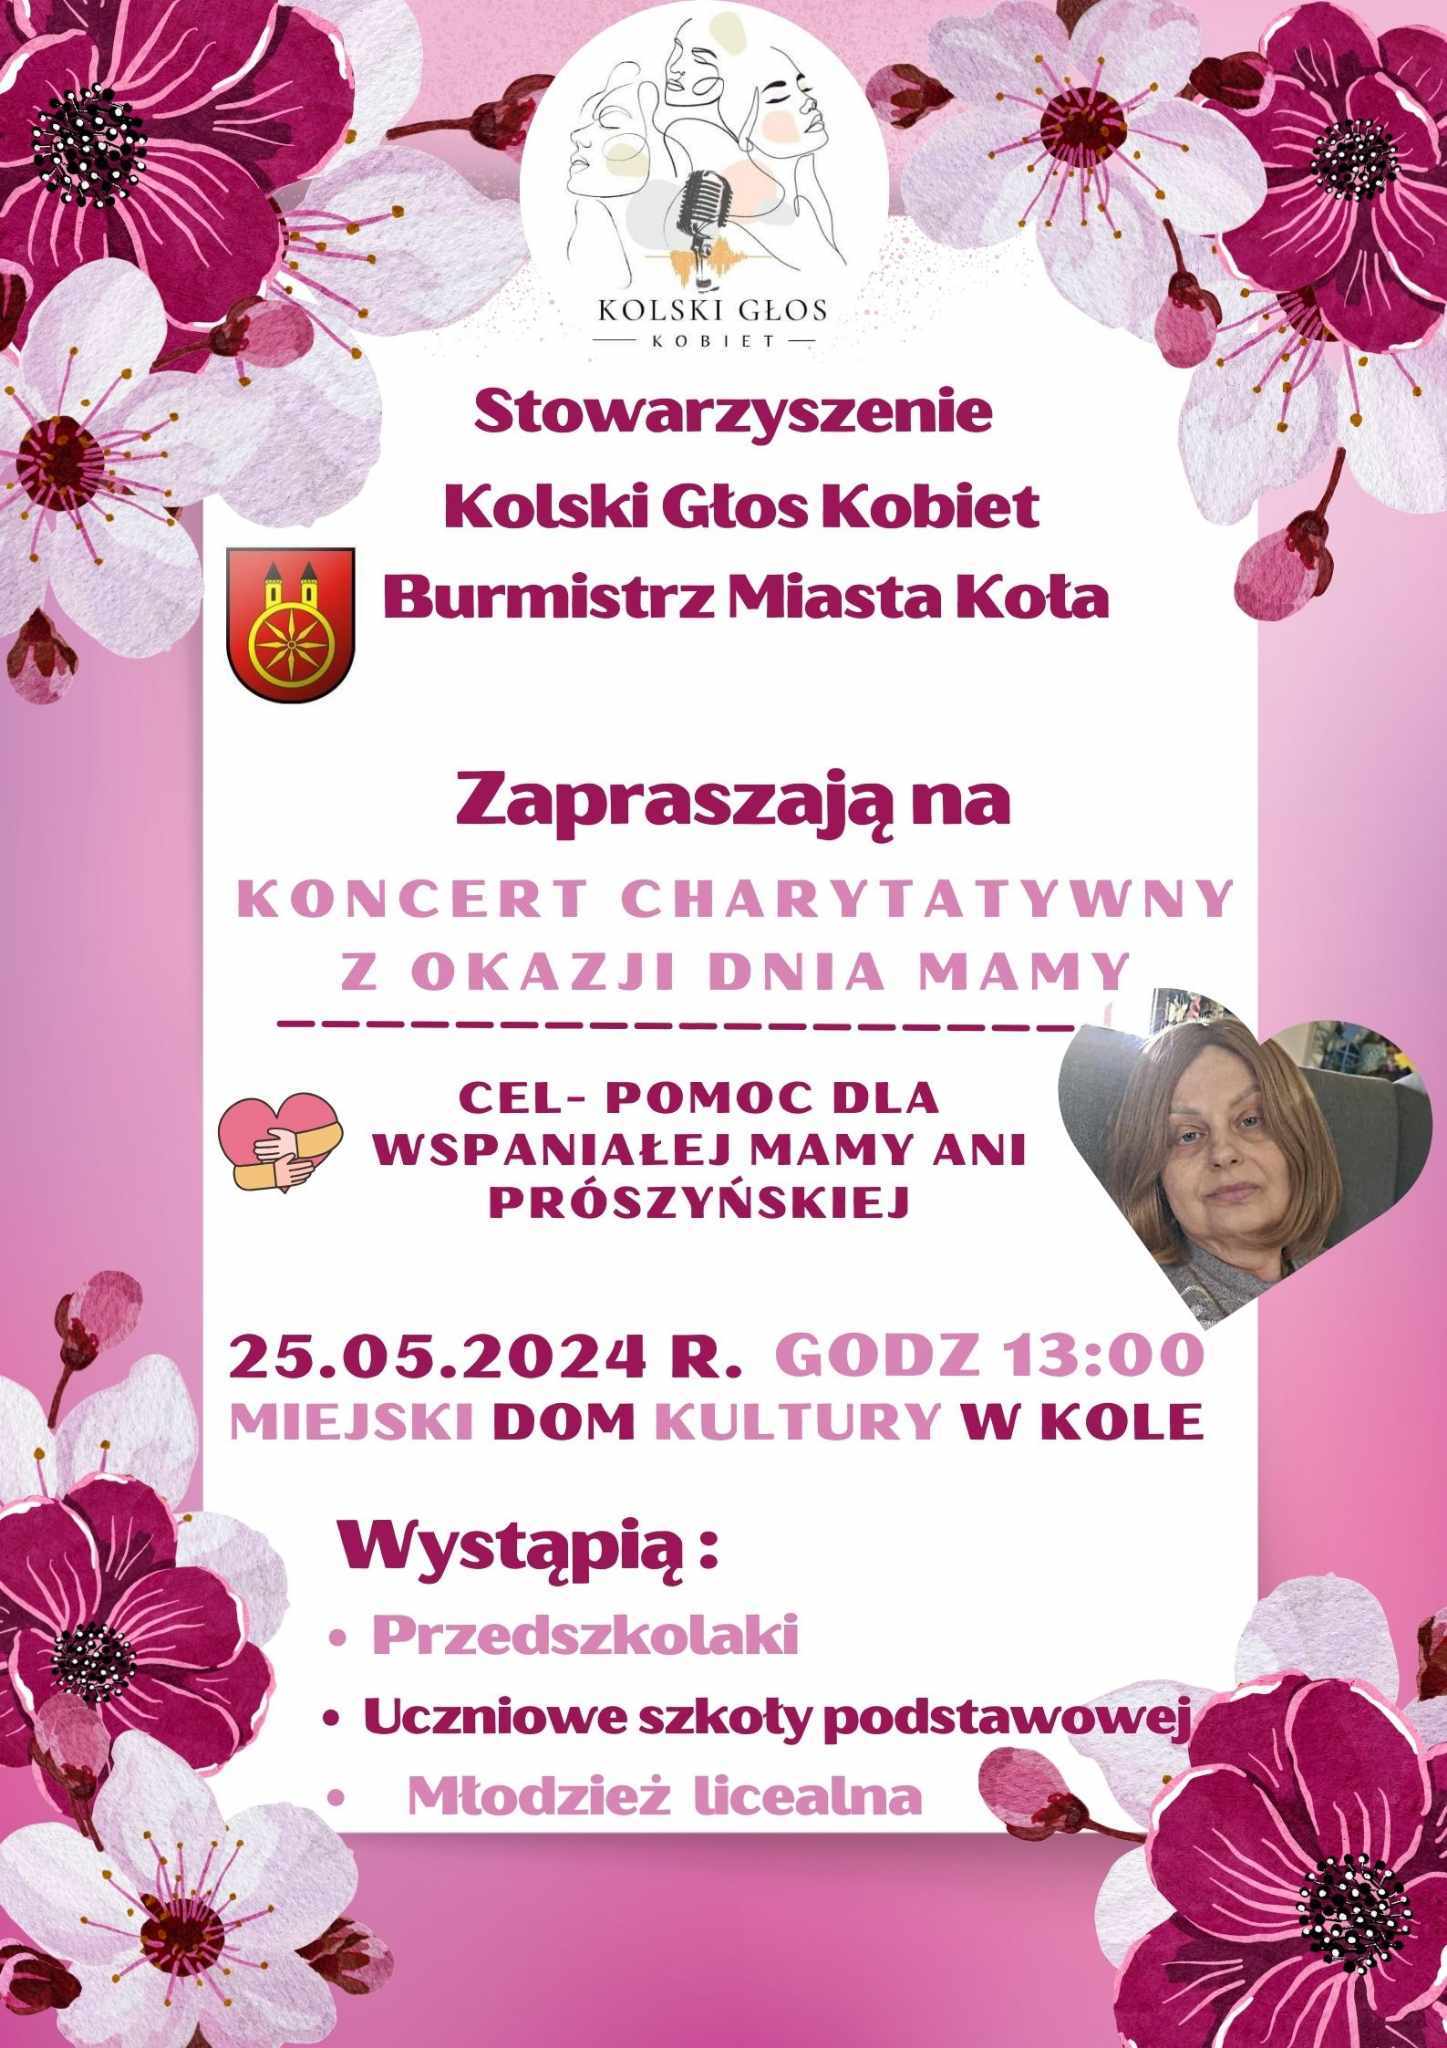 Plakat Koncertu Charytatywnego z okazji Dnia Mamy, w każdym rogu plakatu kolorowe kwiaty